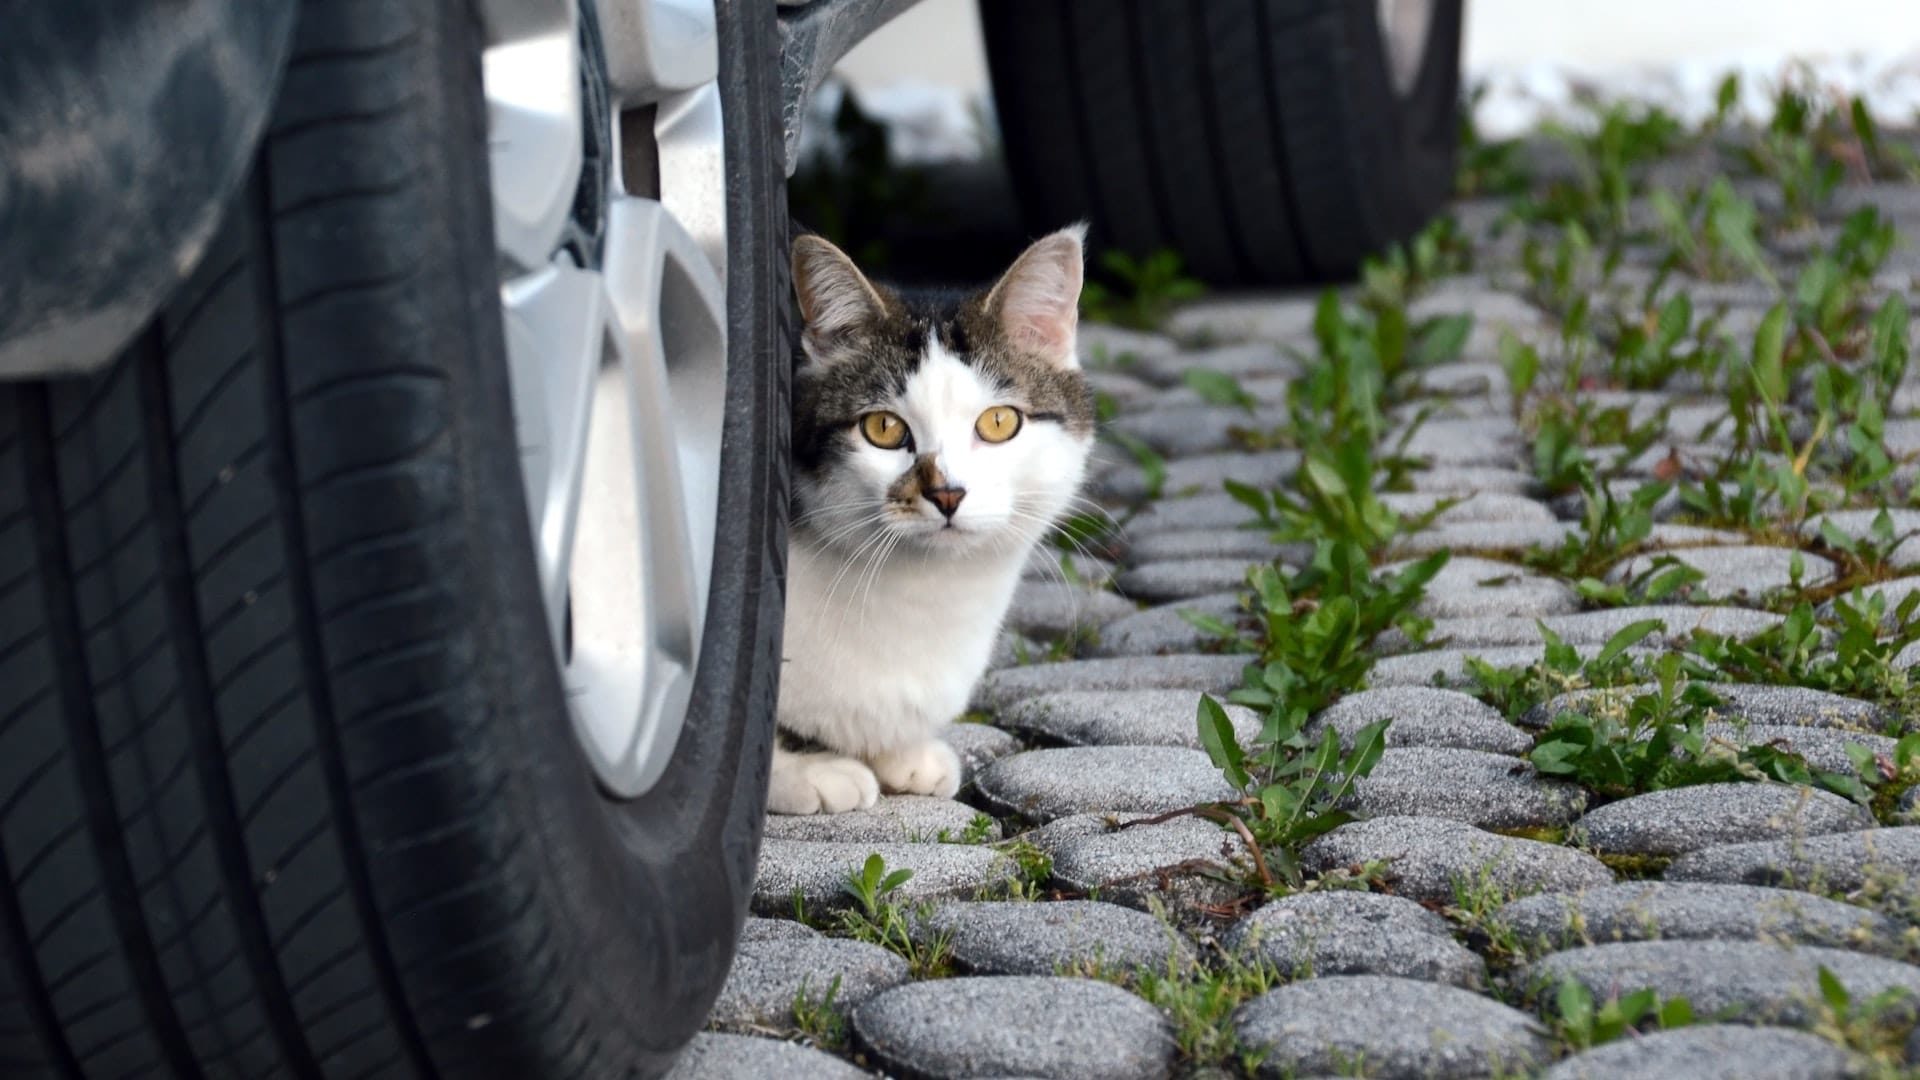 Road traffic laws regarding cat collisions